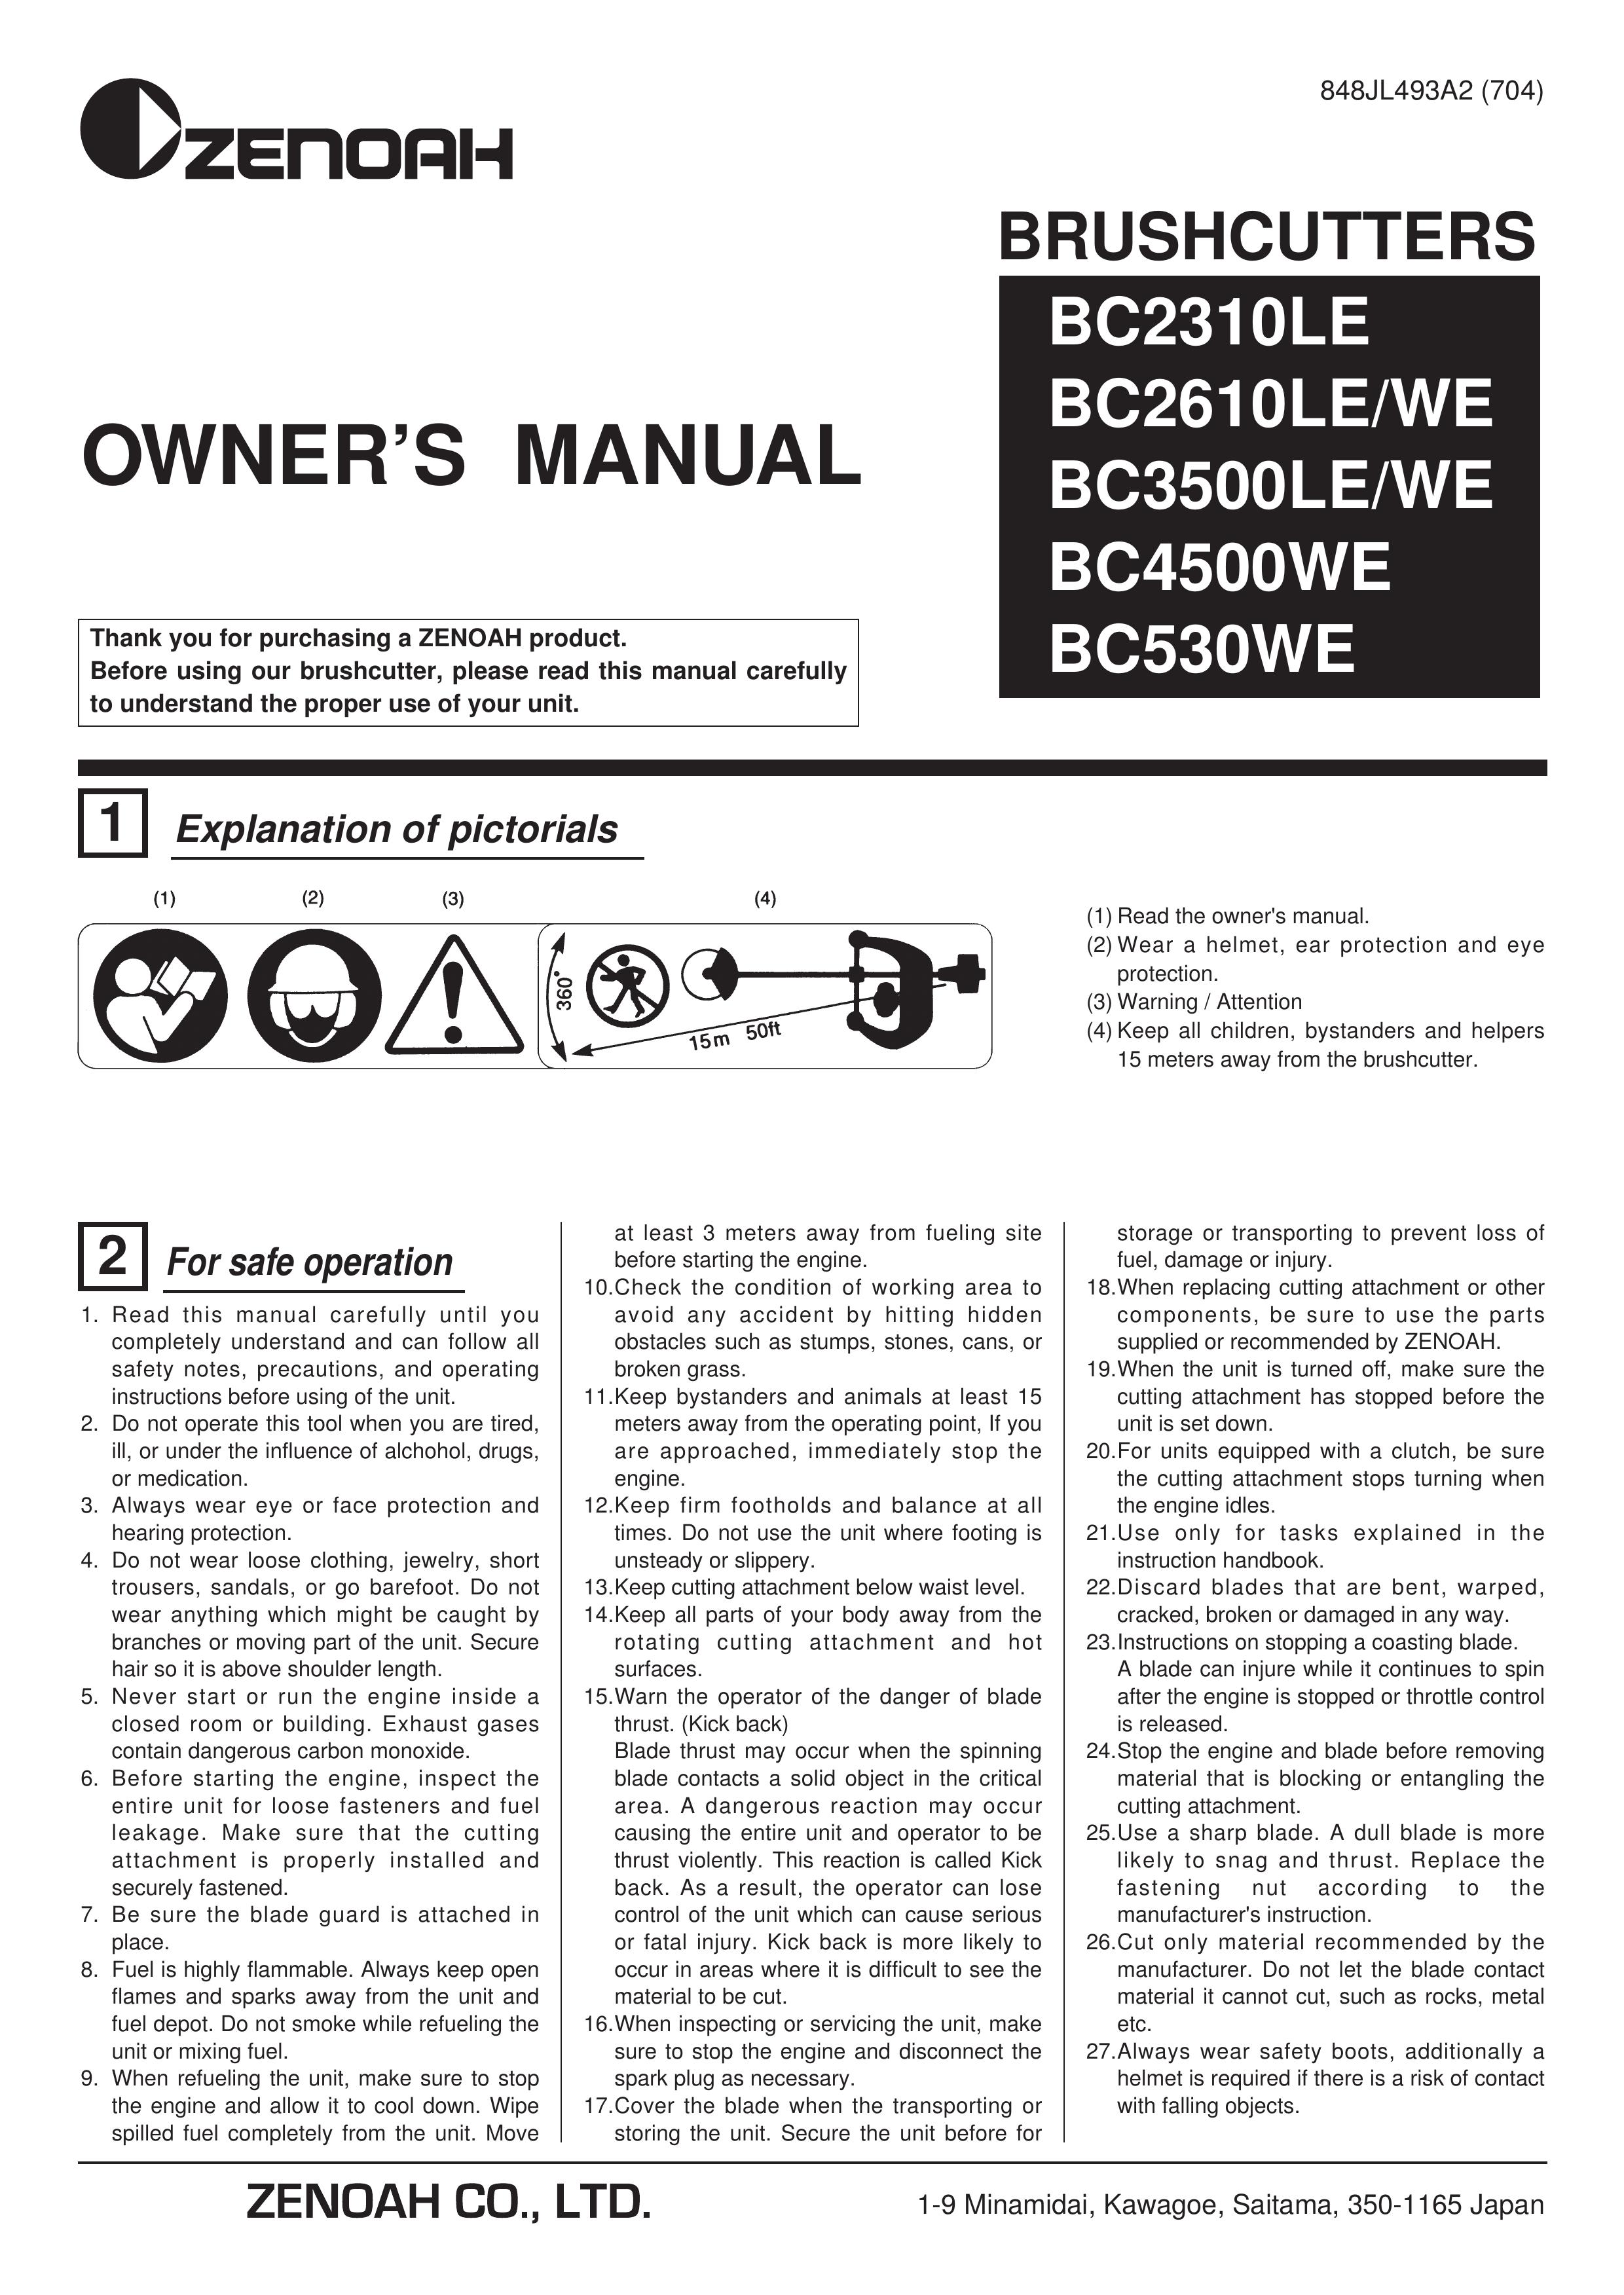 Zenoah BC3500LE/WE Brush Cutter User Manual